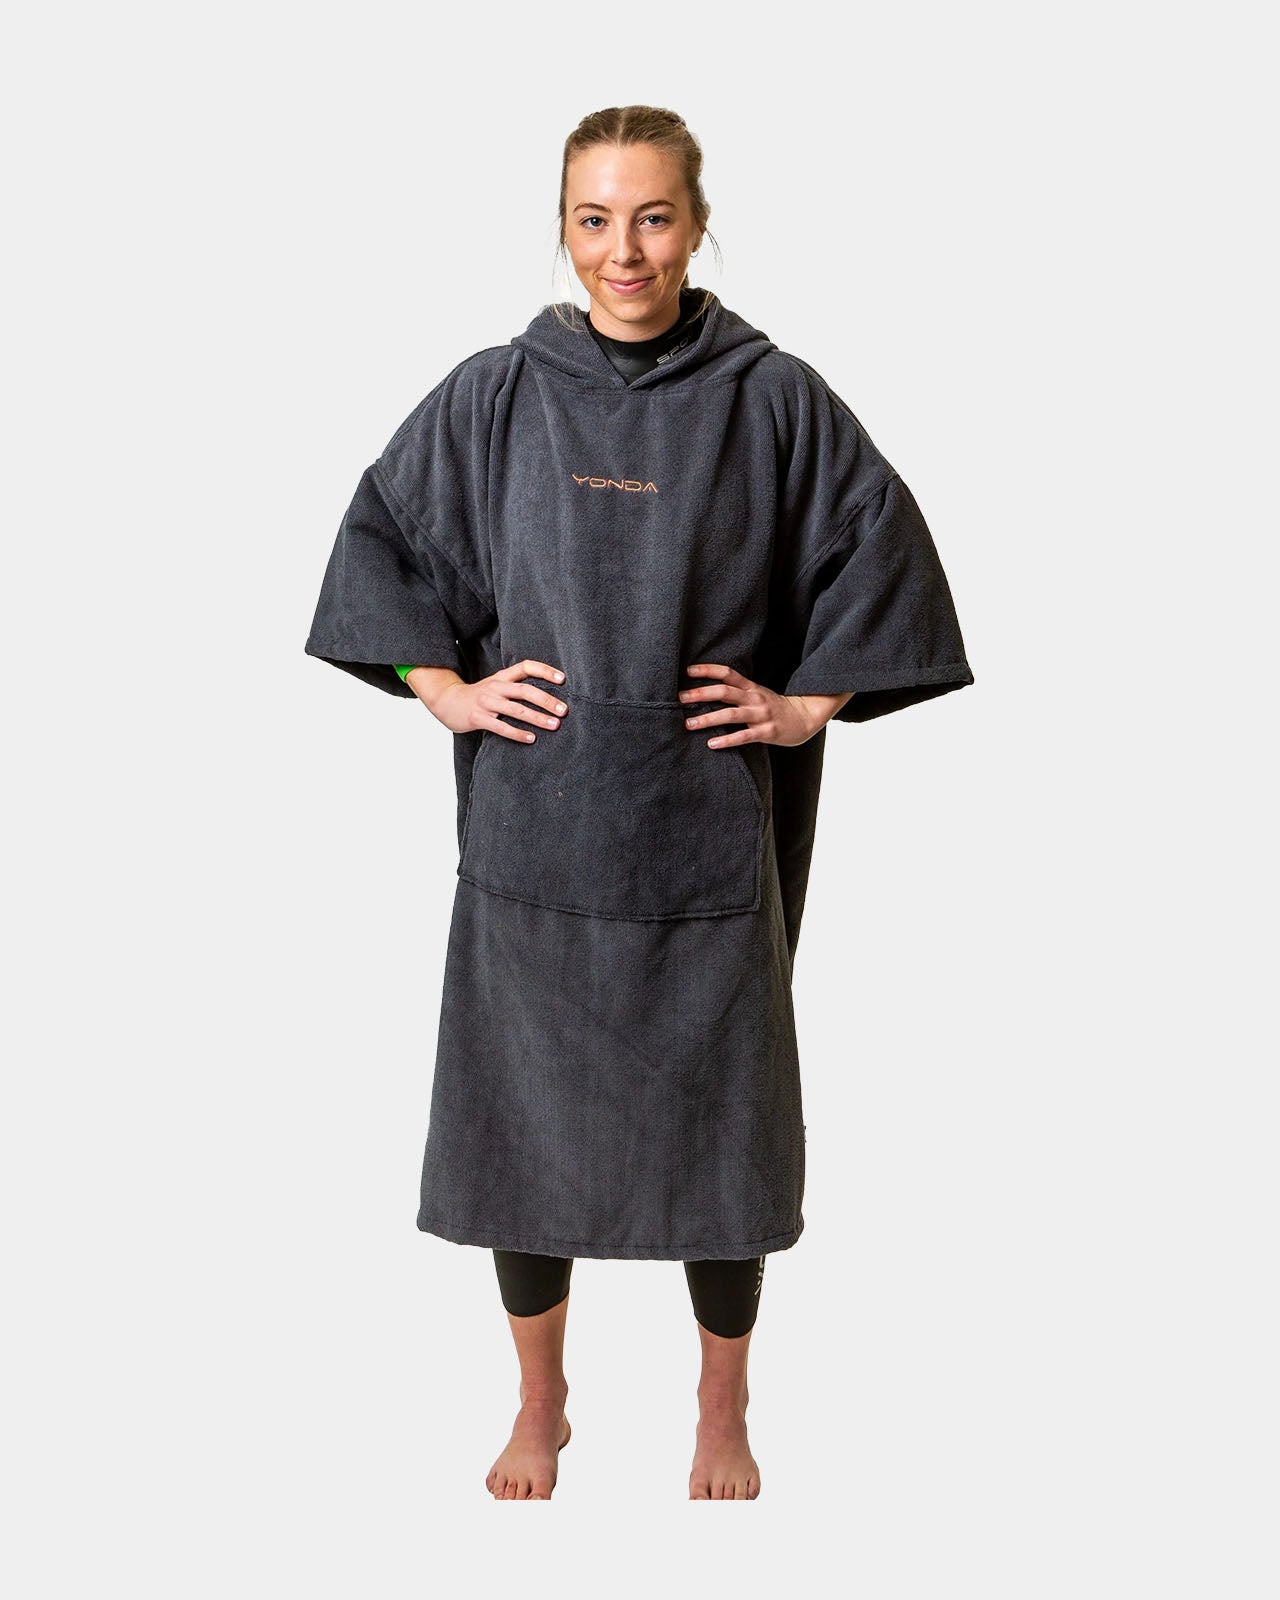 YONDA Outdoor Towel Changing Robe